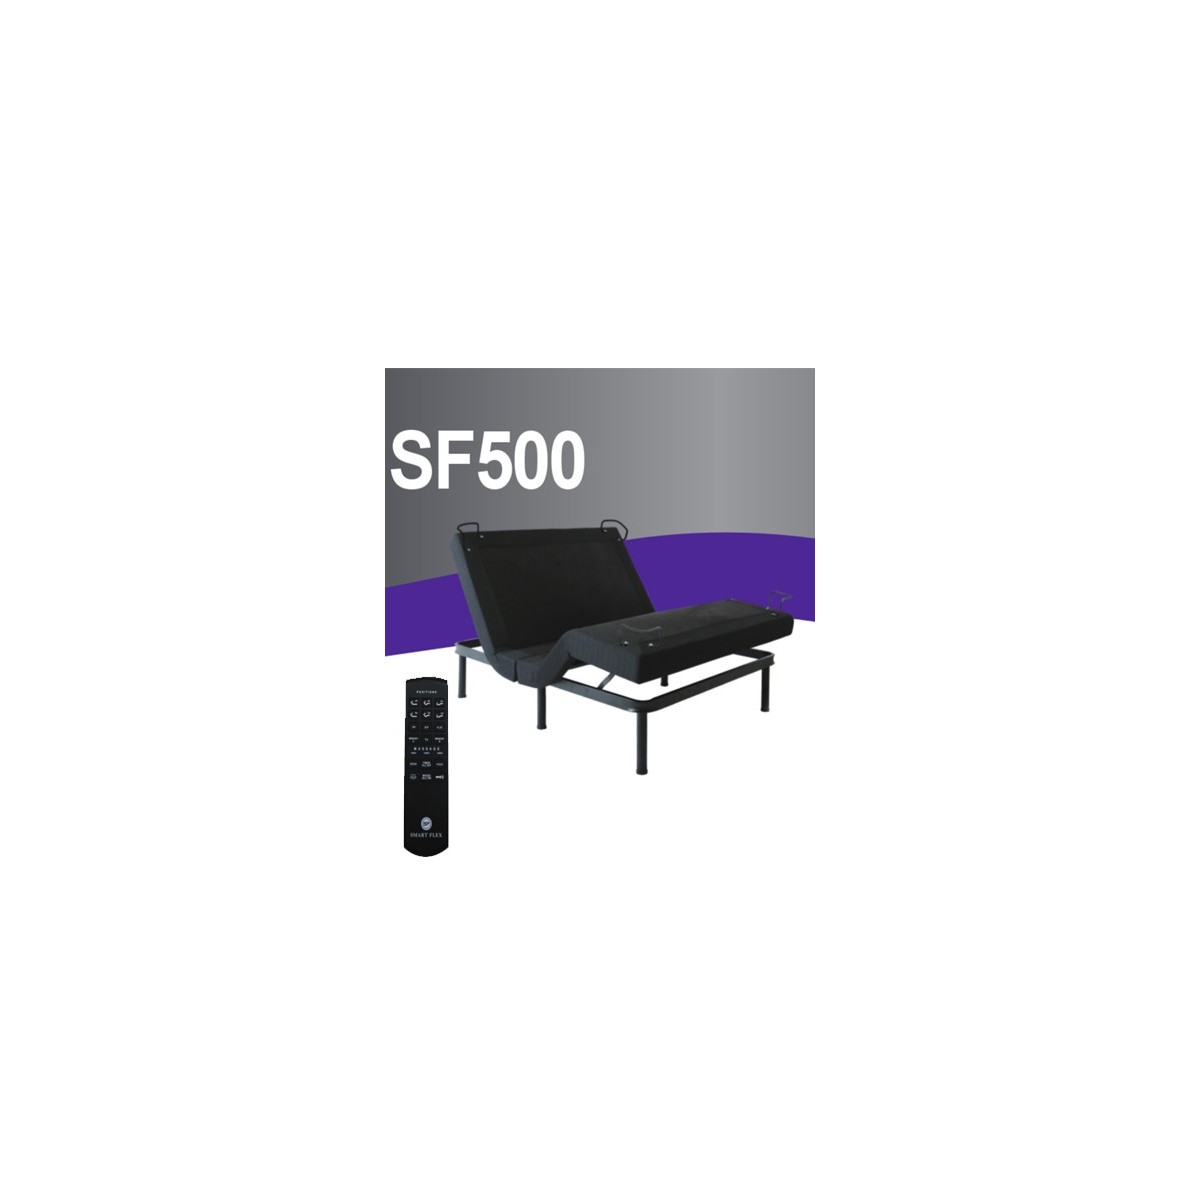 Smart Flex 500 Electric Adjustable Bed